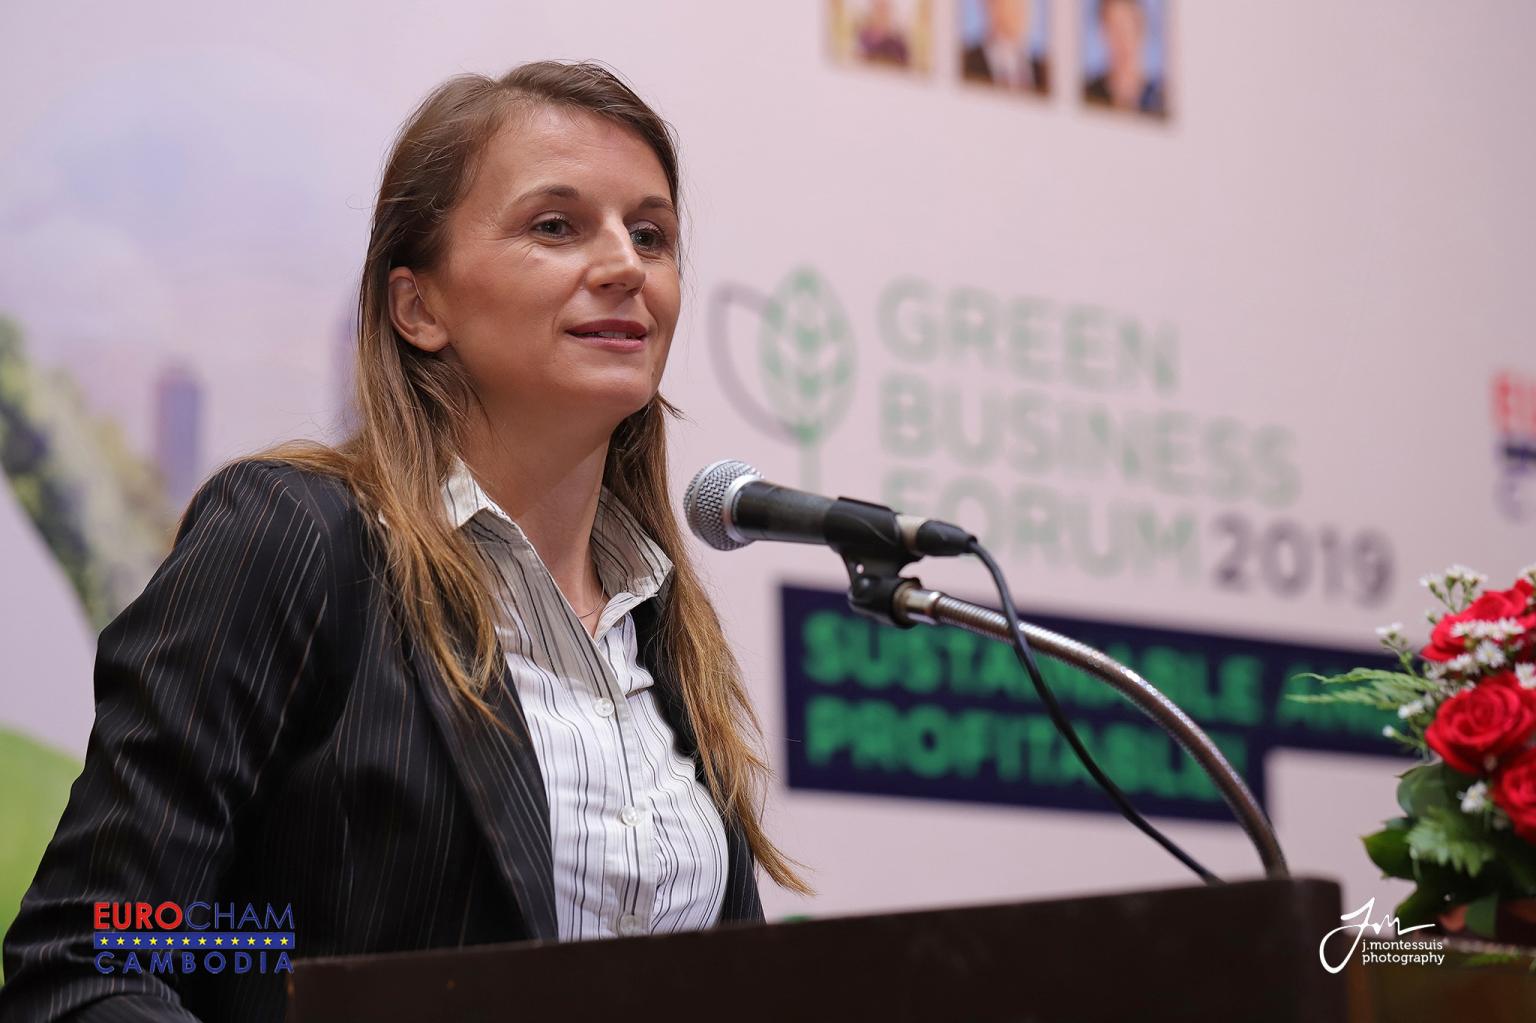 Susanne Bodach elected EuroCham’s Green Business Chairwoman